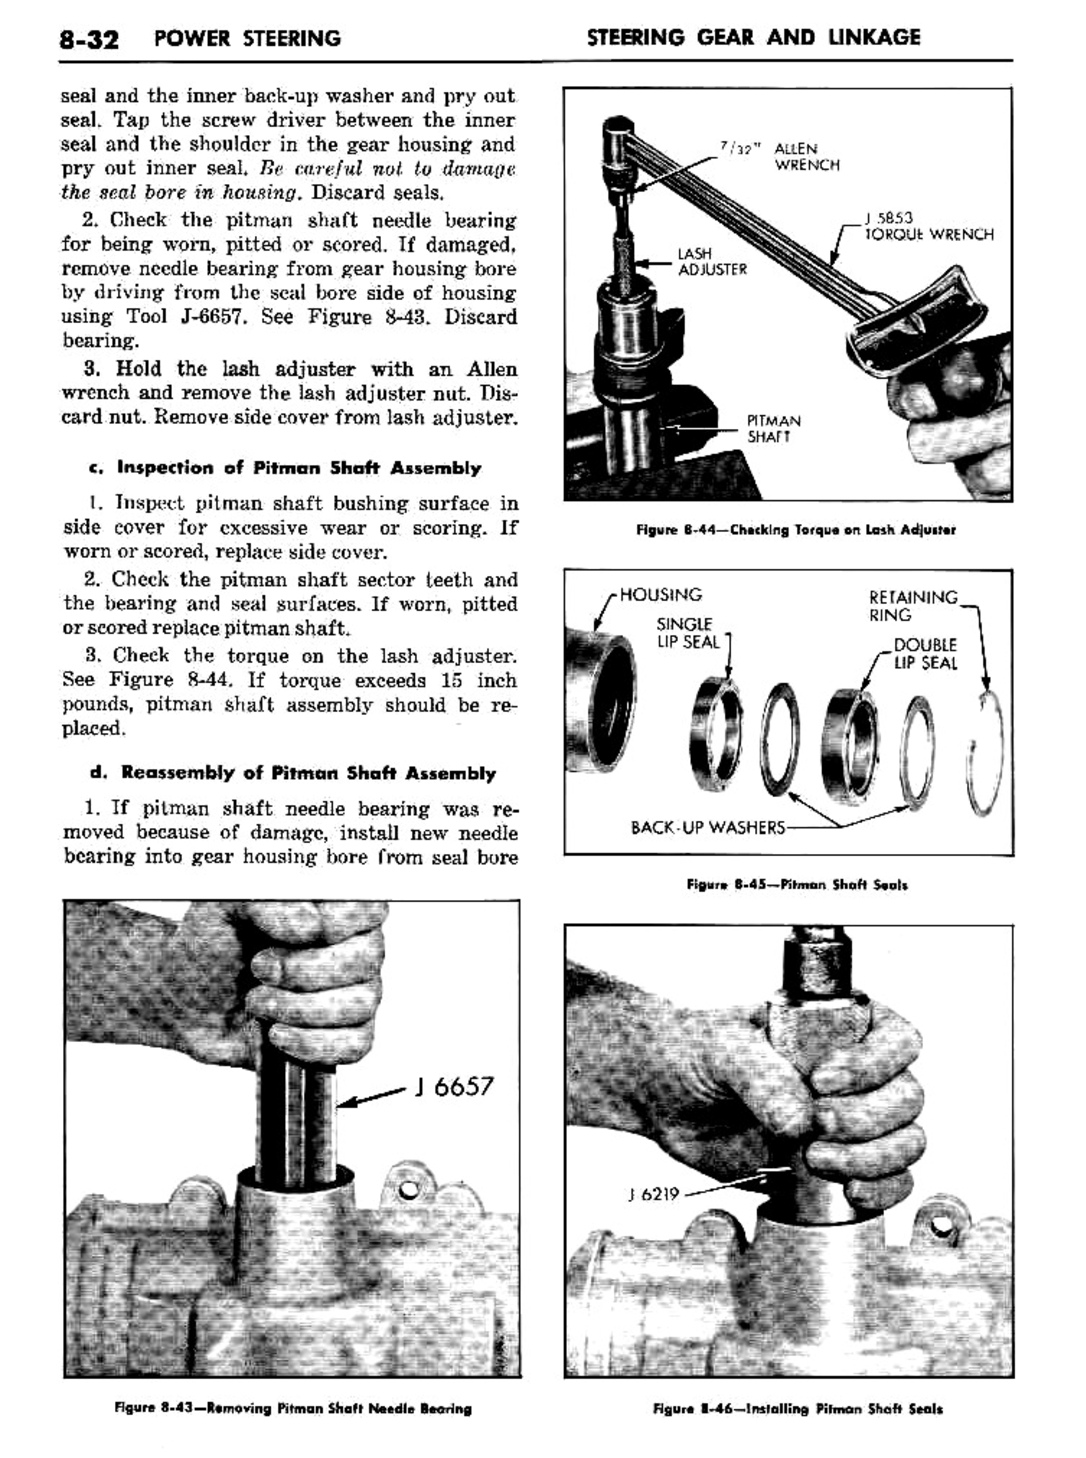 n_09 1960 Buick Shop Manual - Steering-032-032.jpg